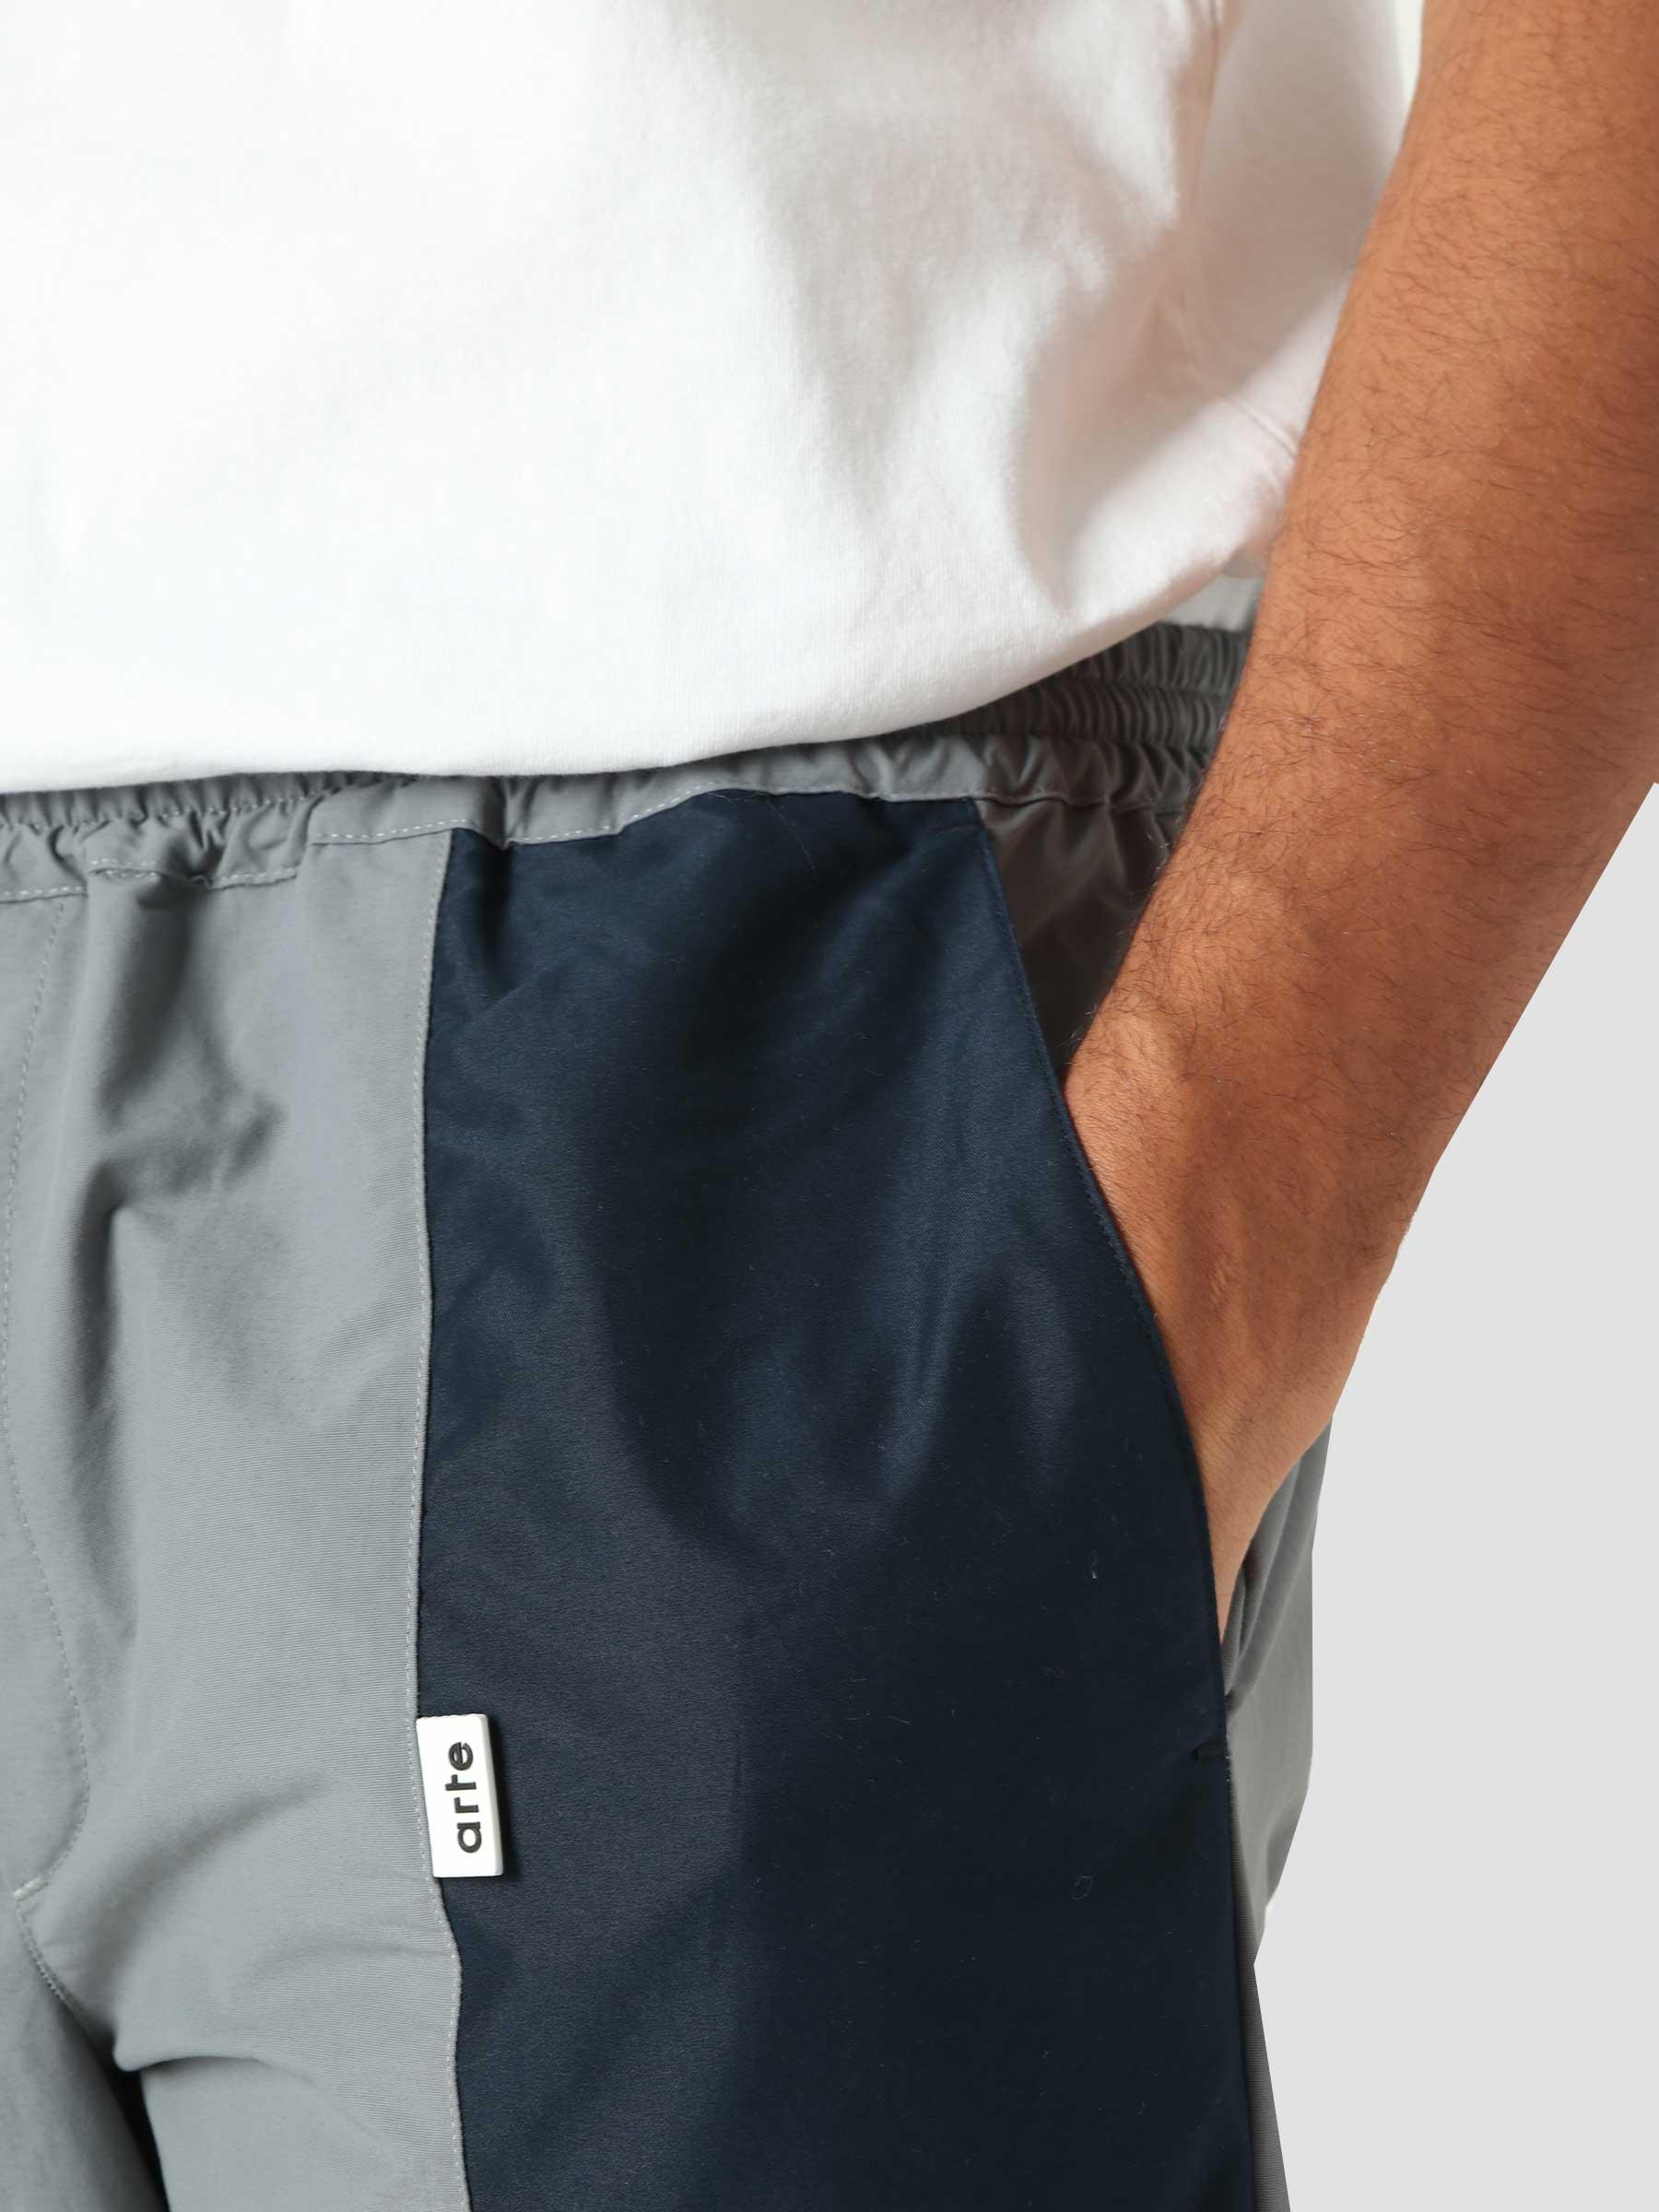 Jaden Pants Pants Grey Navy AW21-074P